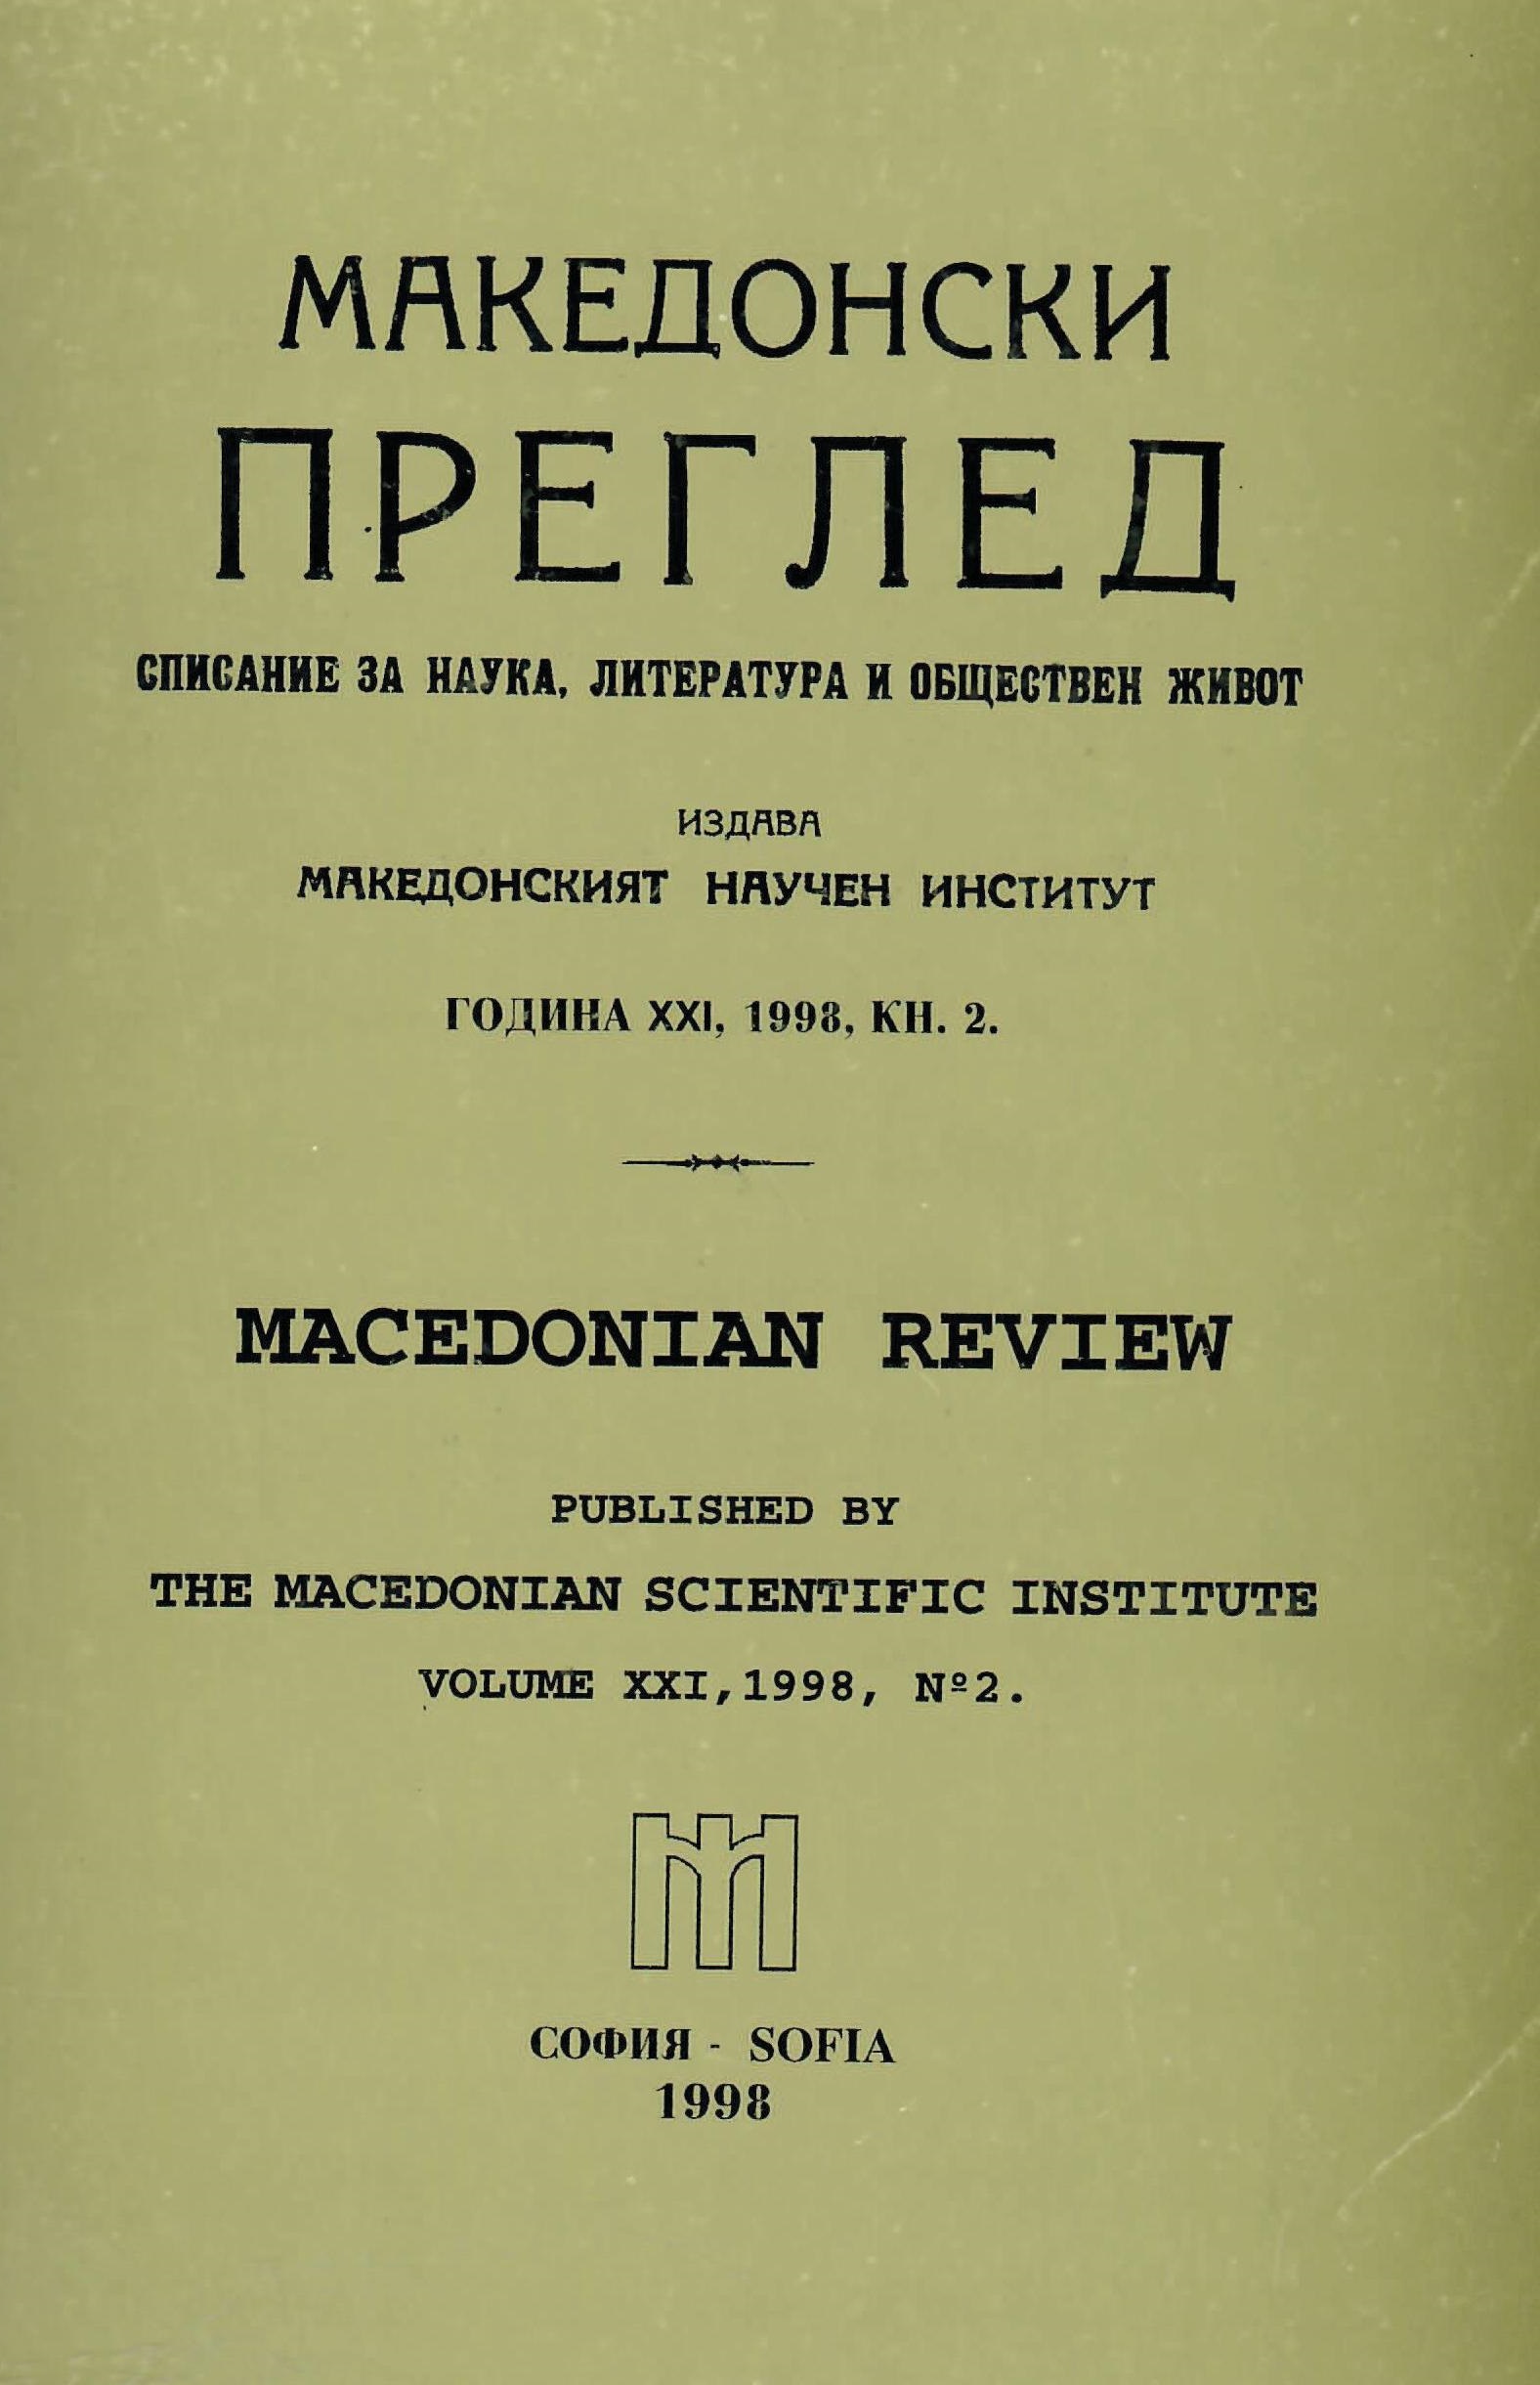 Декларация на Македонския научен институт - София (по повод на срещата в Скопие от 27.04.1998 г. на определен кръг интелектуалци, организирана от Хелзинкските комитети на двете страни)